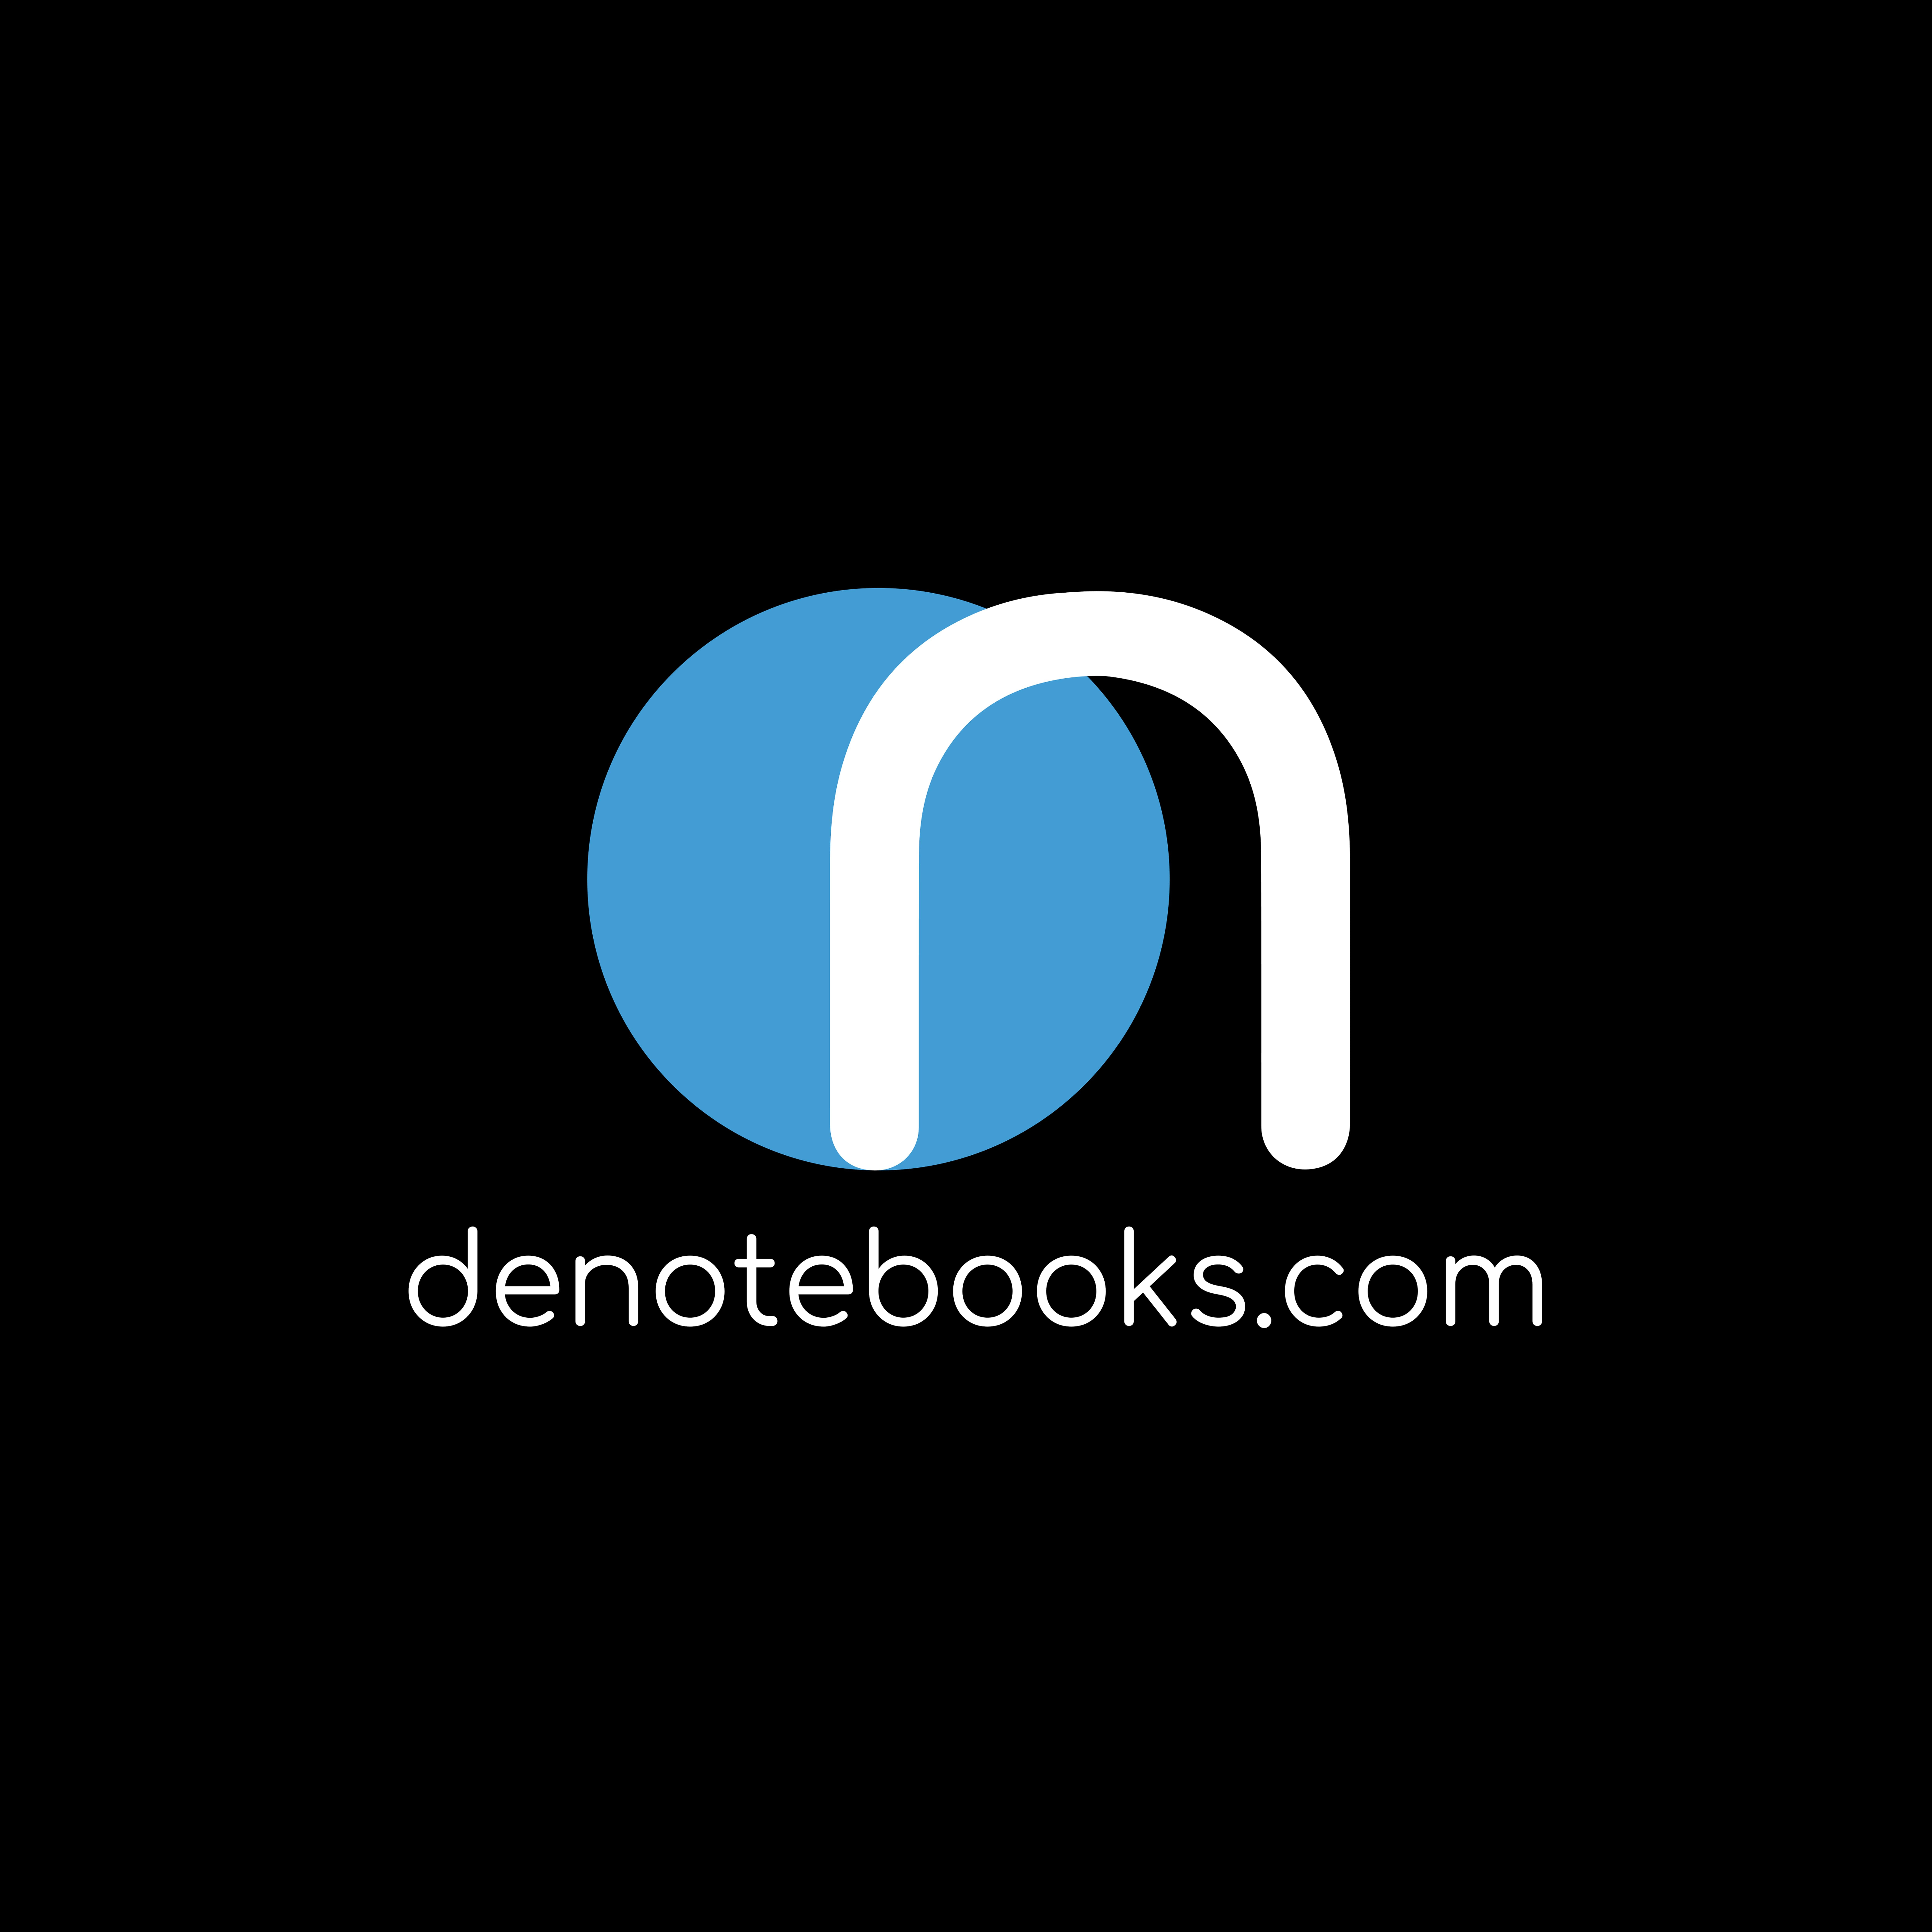 denotebooks.com